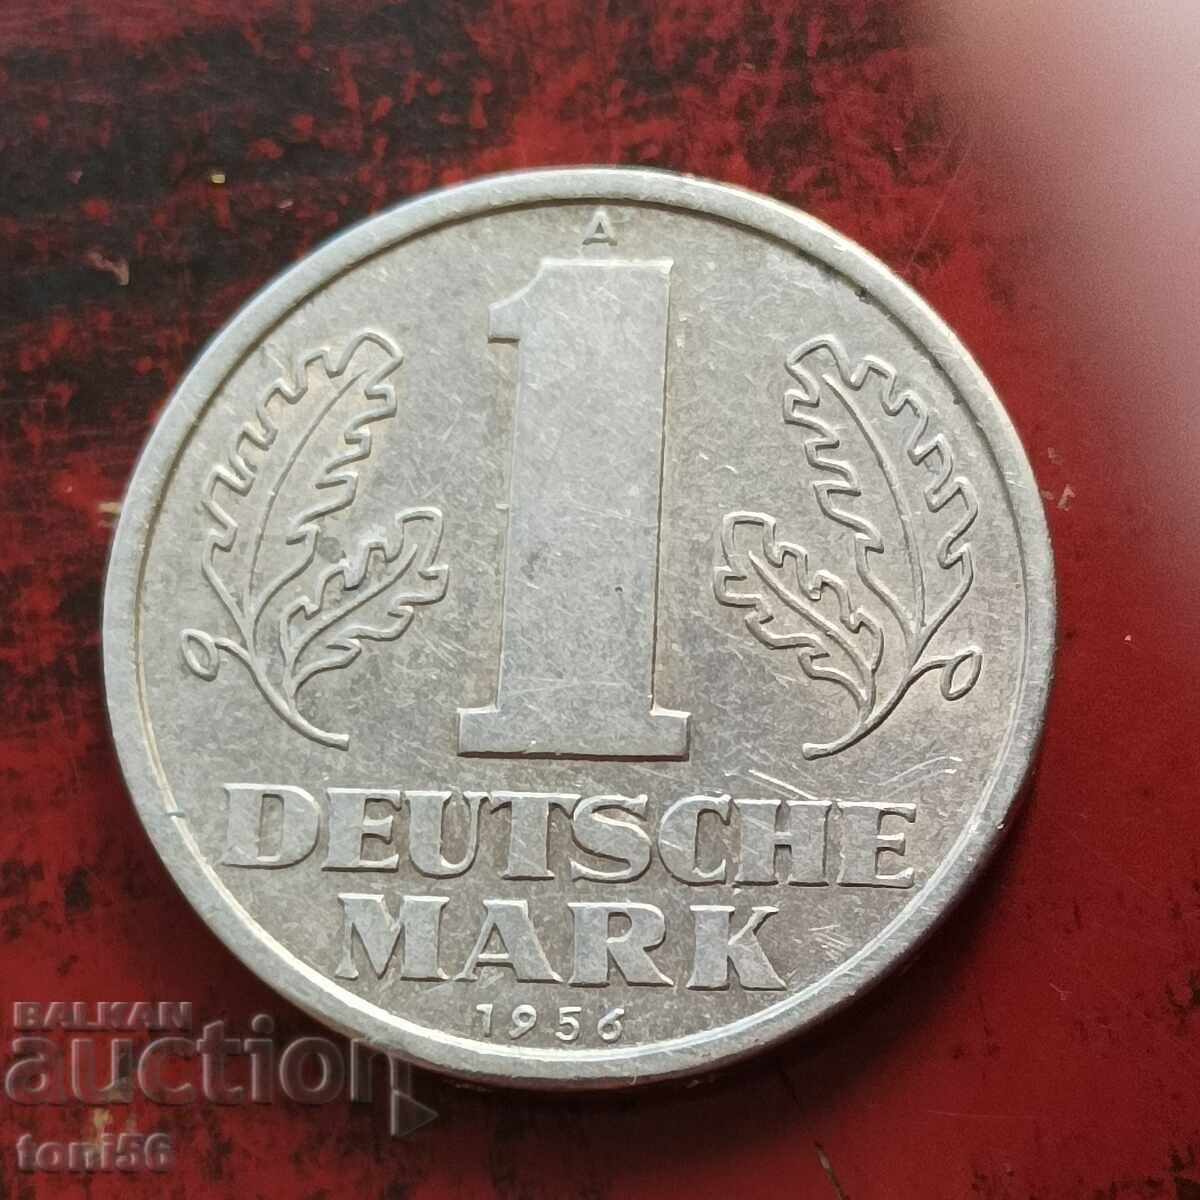 GDR 1 mark 1956